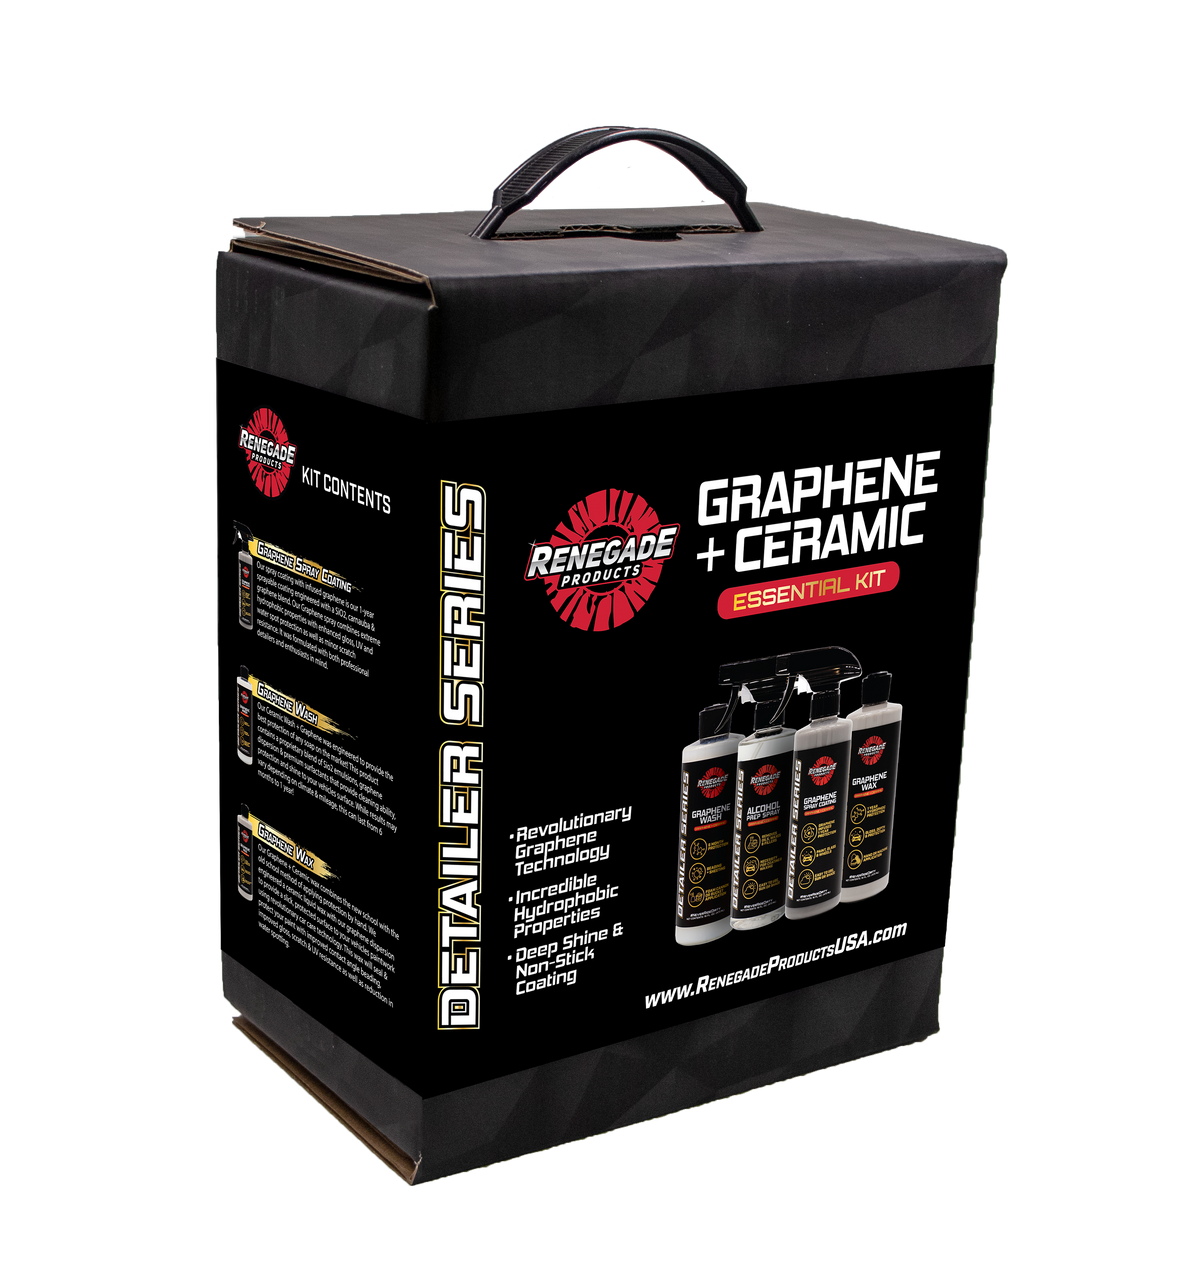 Graphene + Ceramic Essential Kit